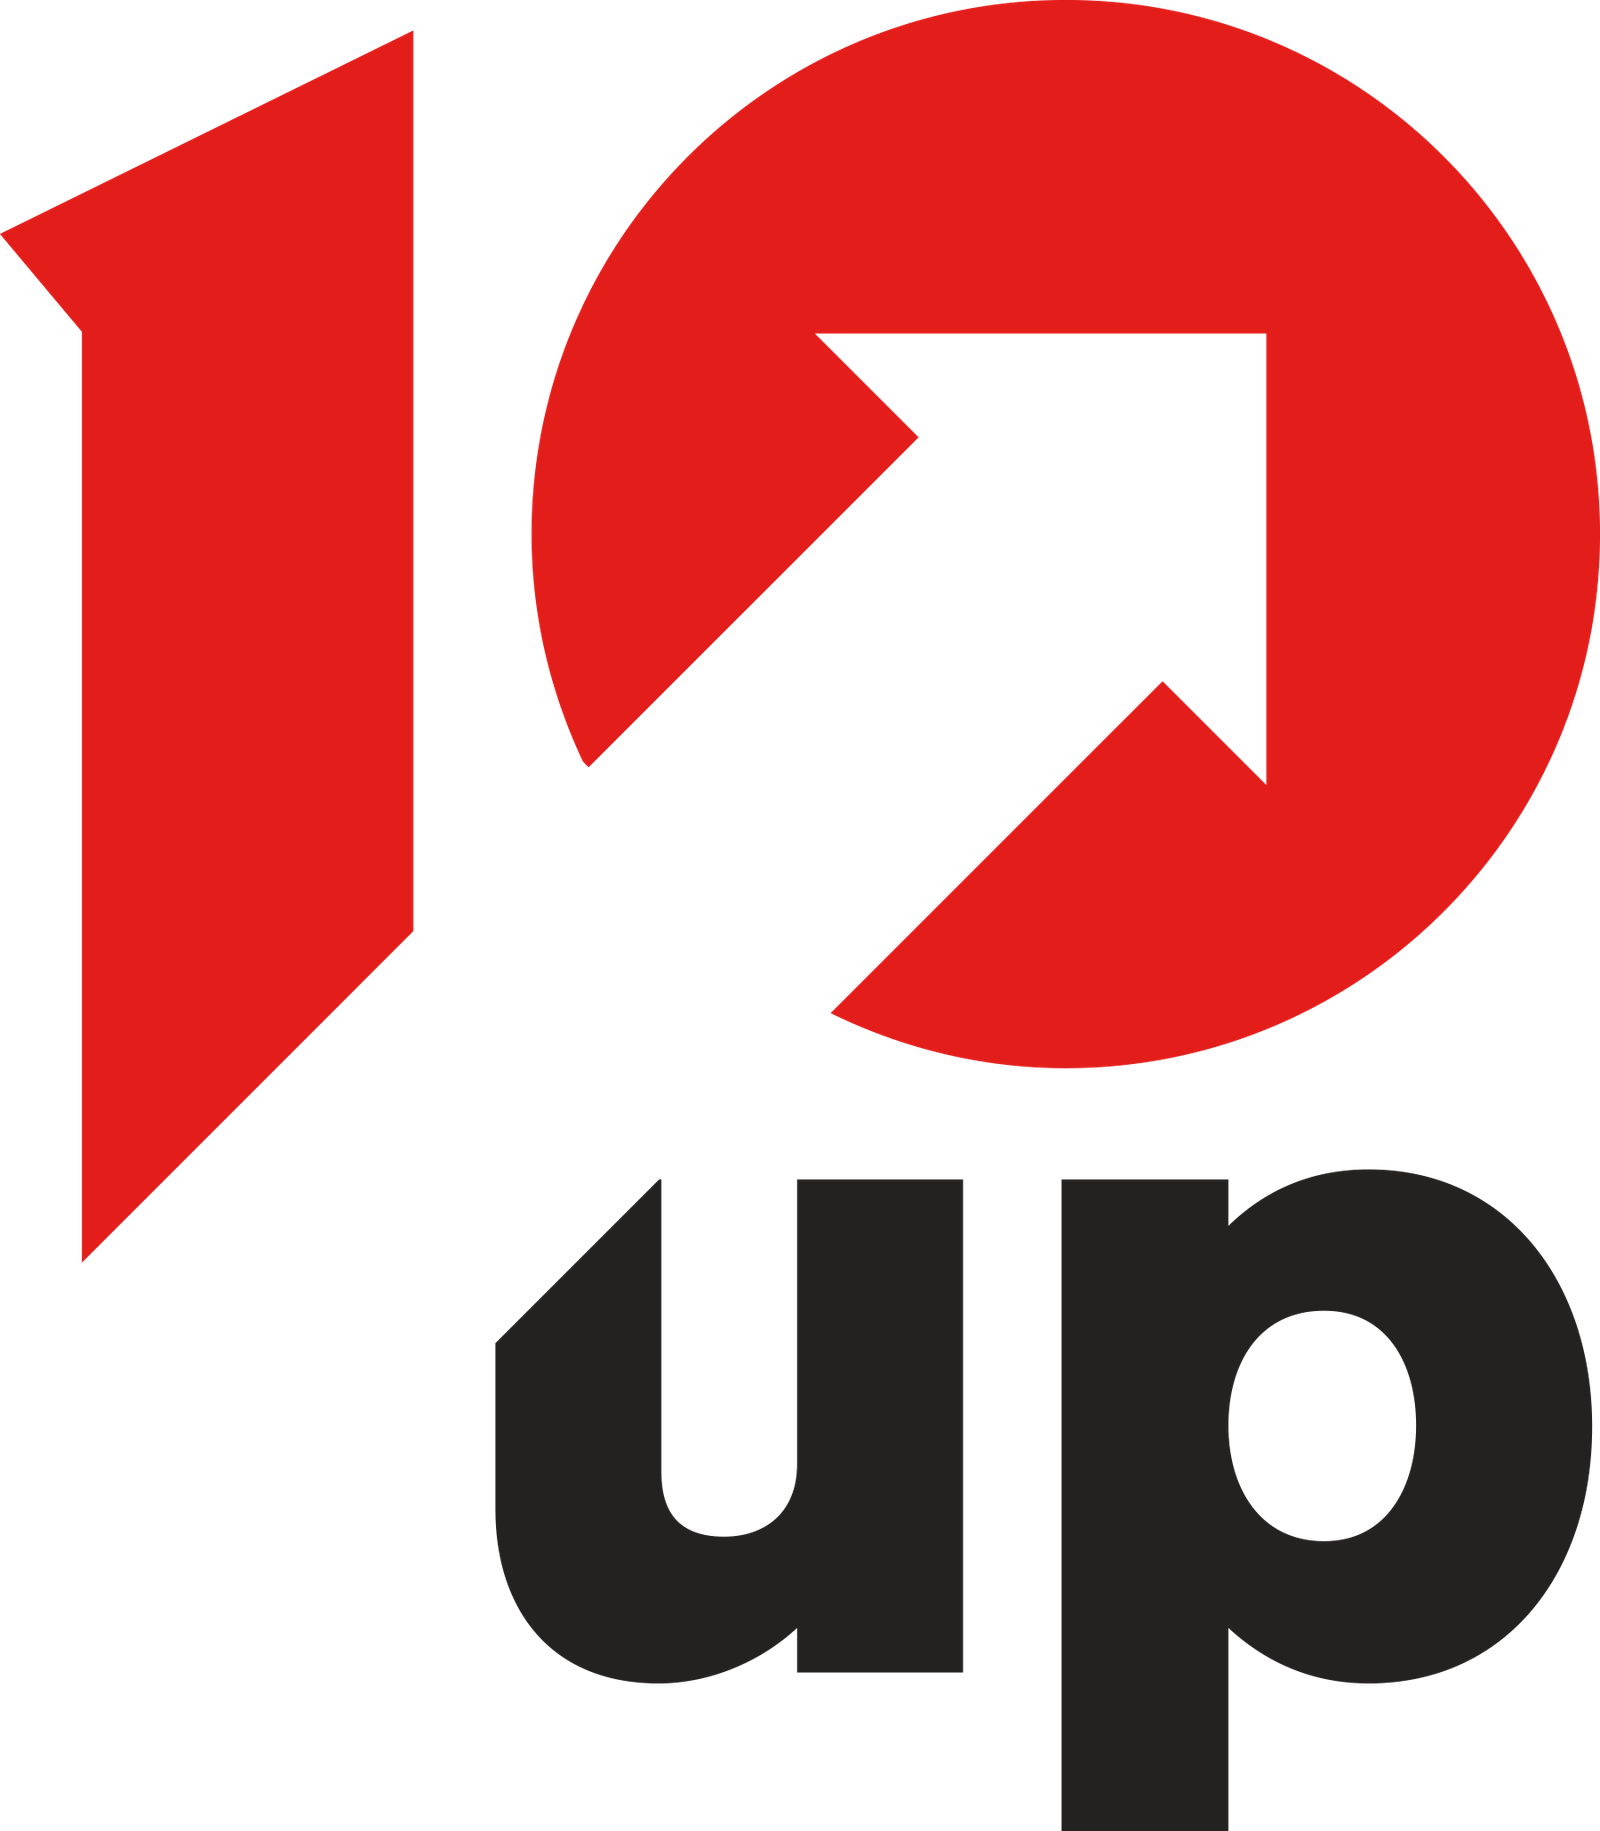 10up logo